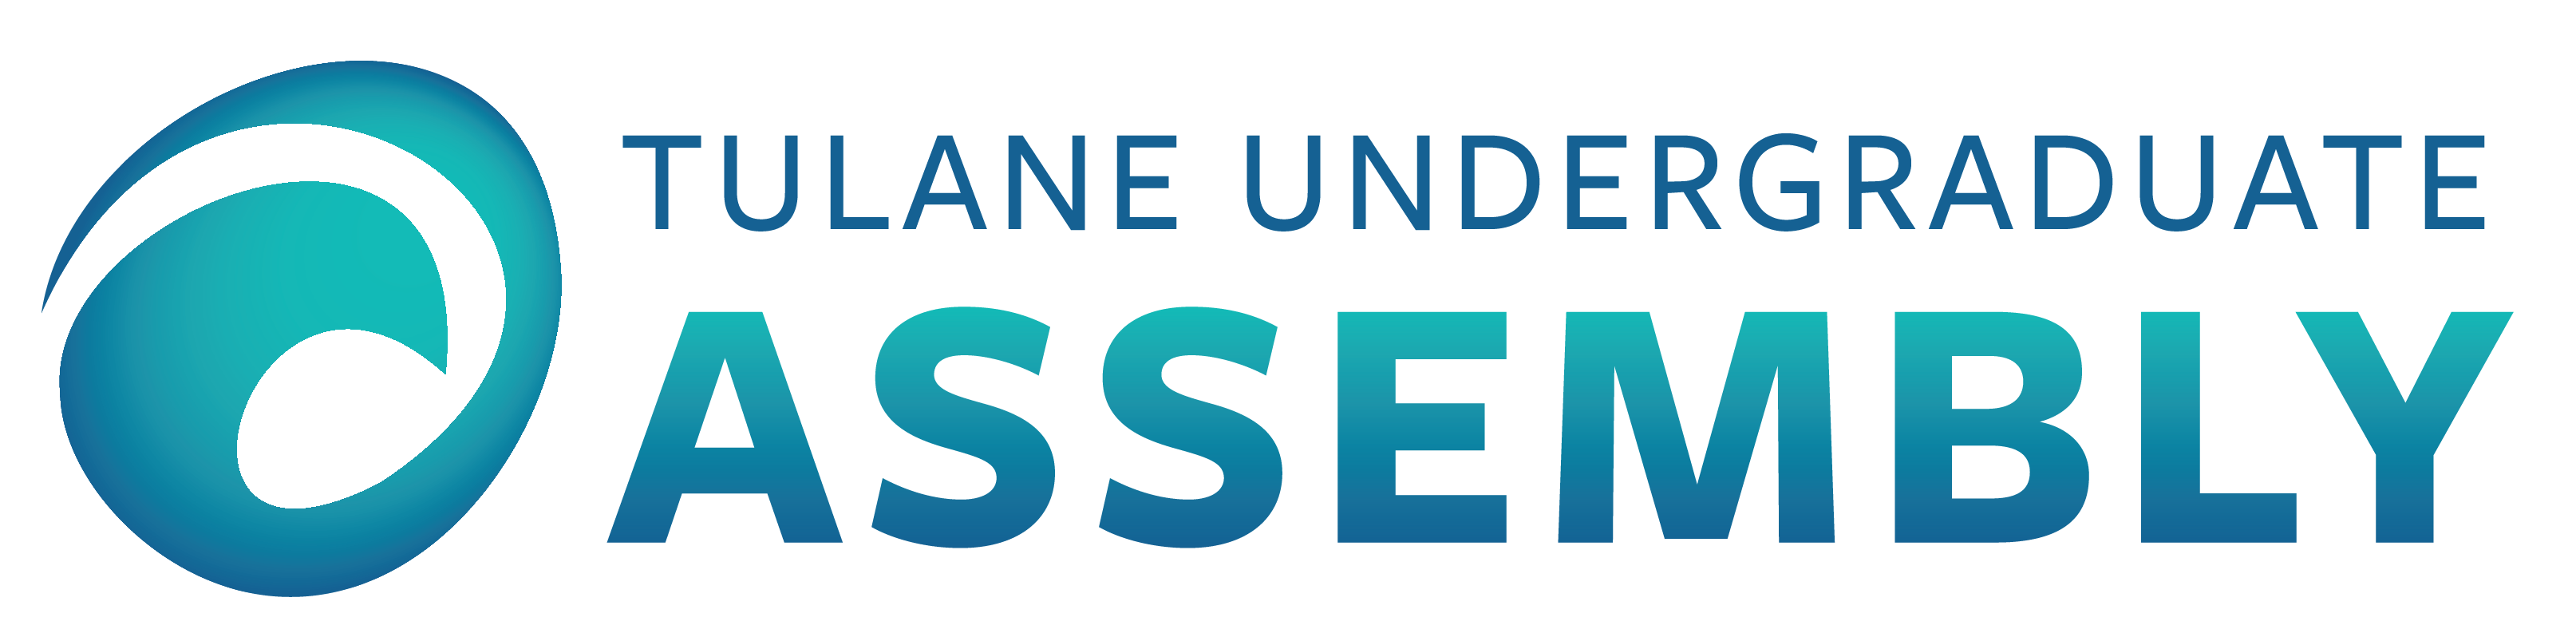 Tulane Undergraduate Assembly Blue Green Wave Logo